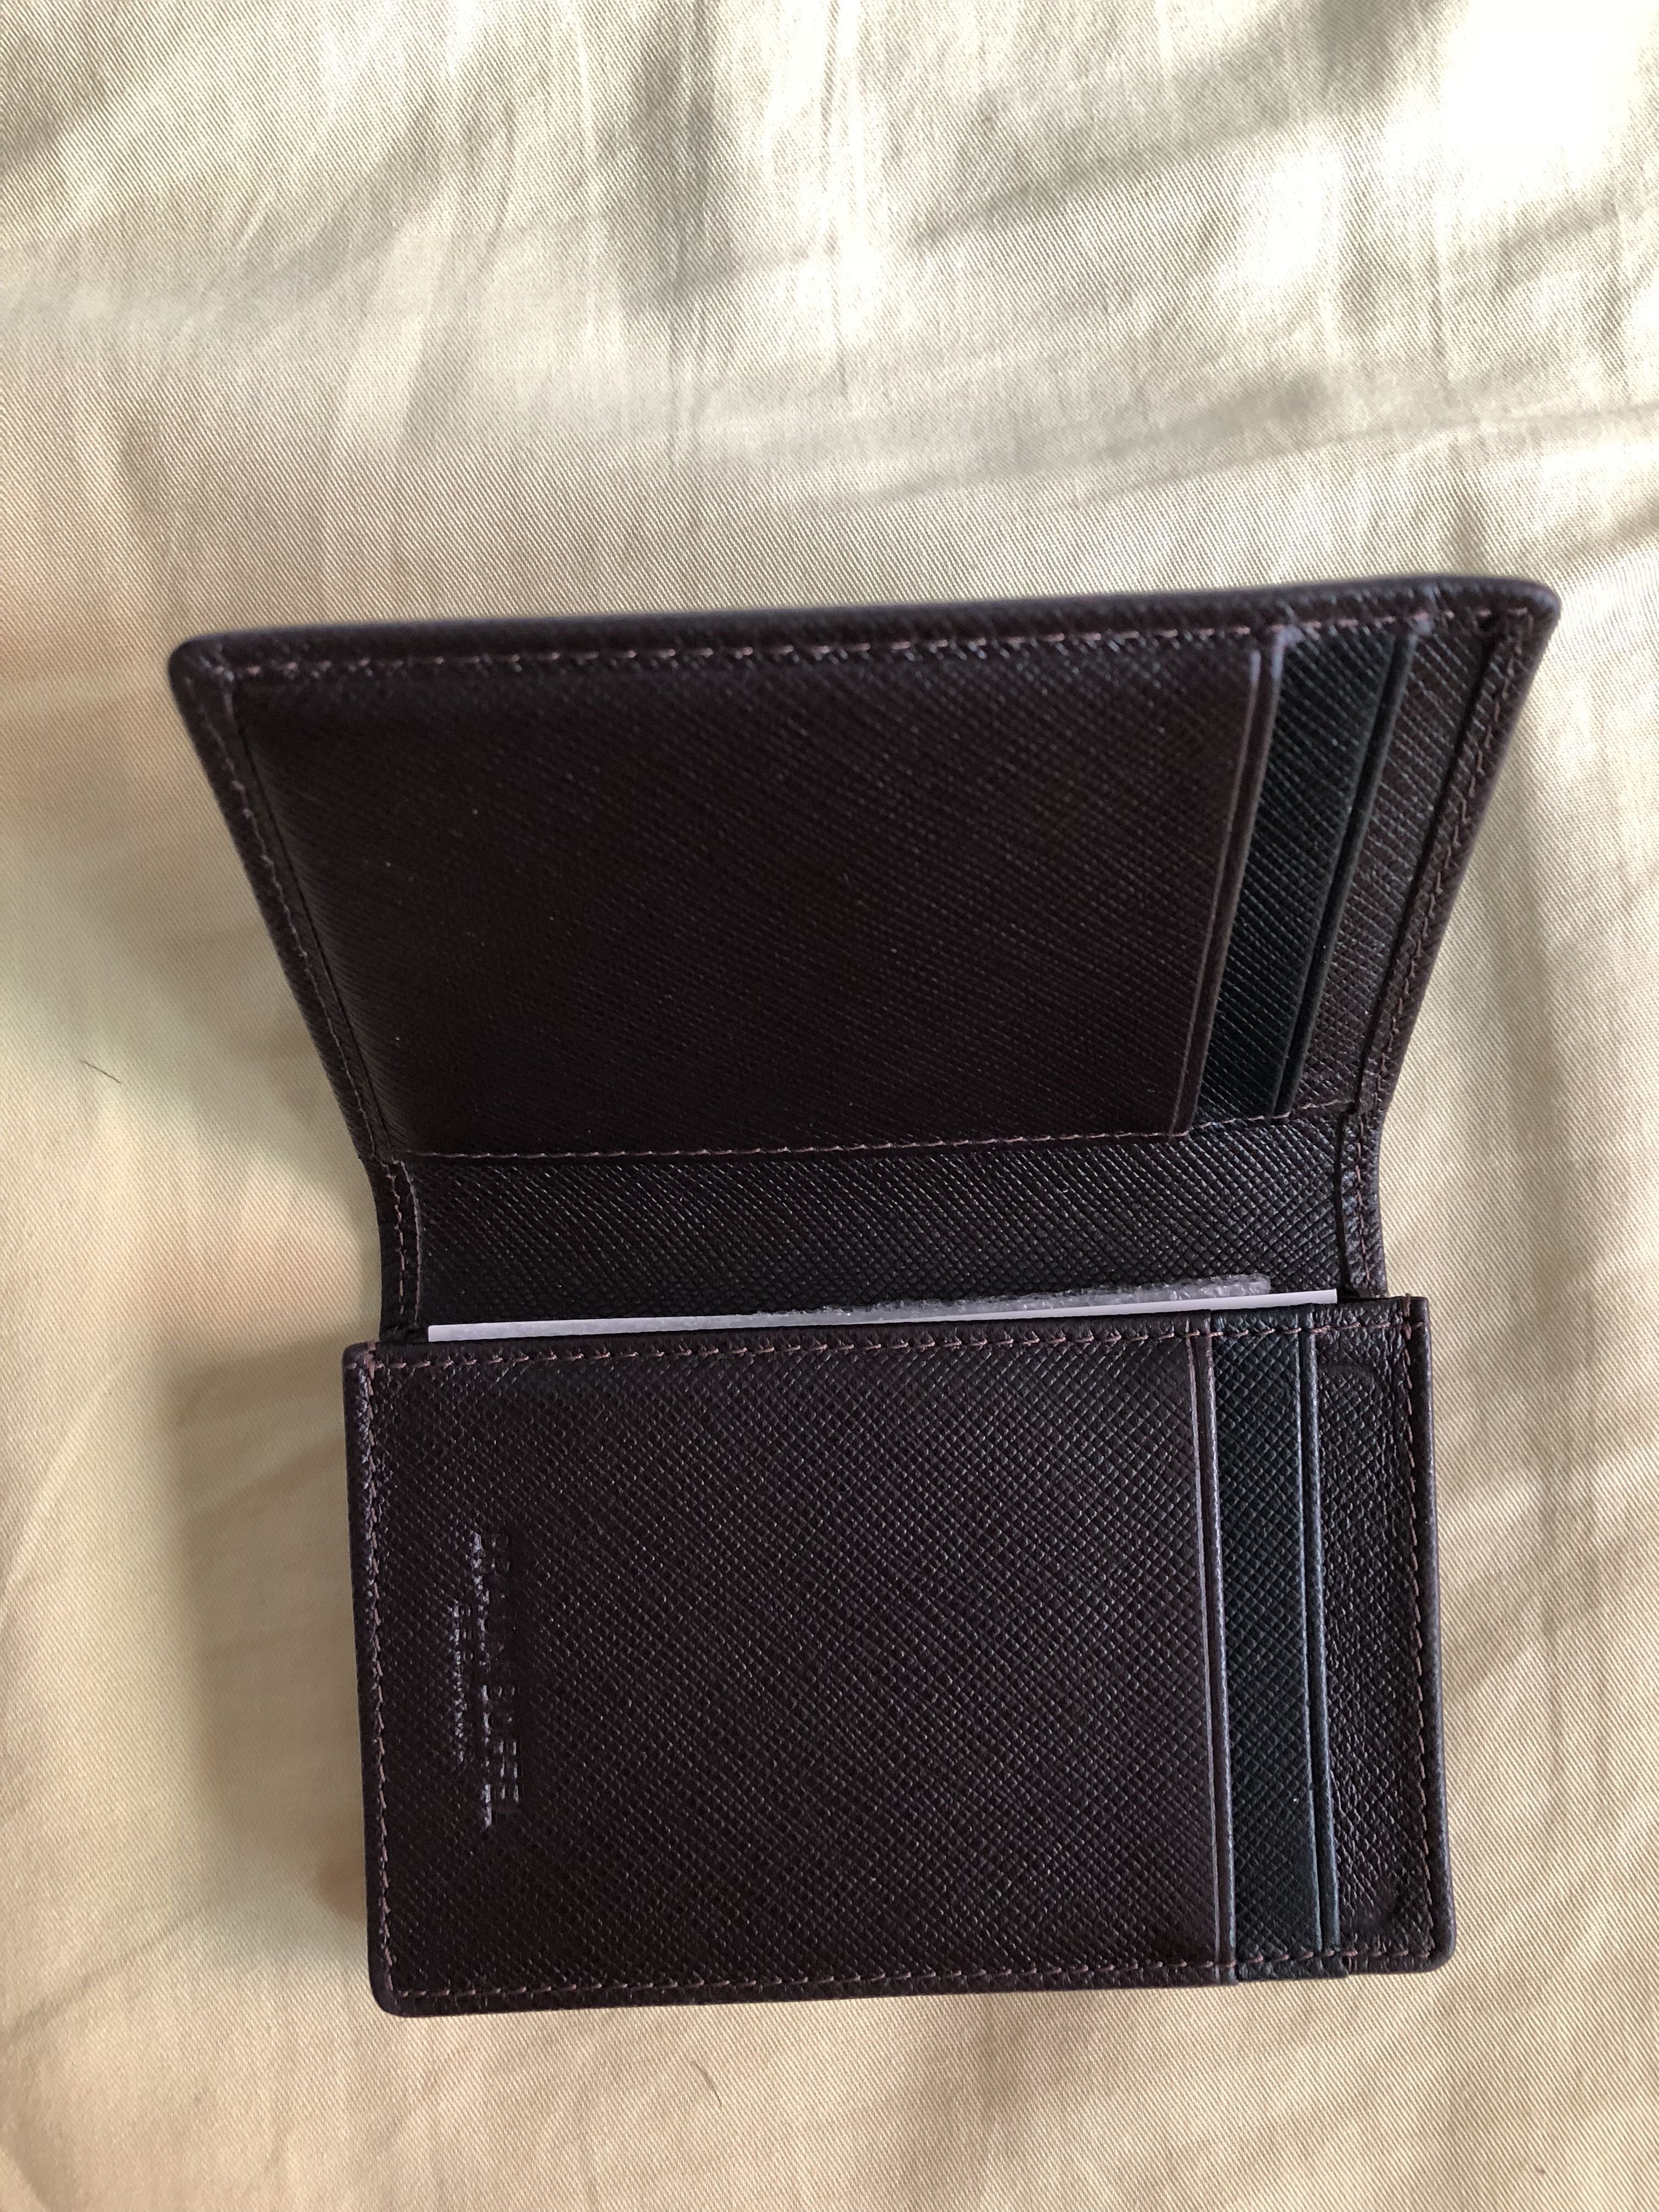 Braun Buffel Card Holder Wallet, Men's Fashion, Watches & Accessories ...